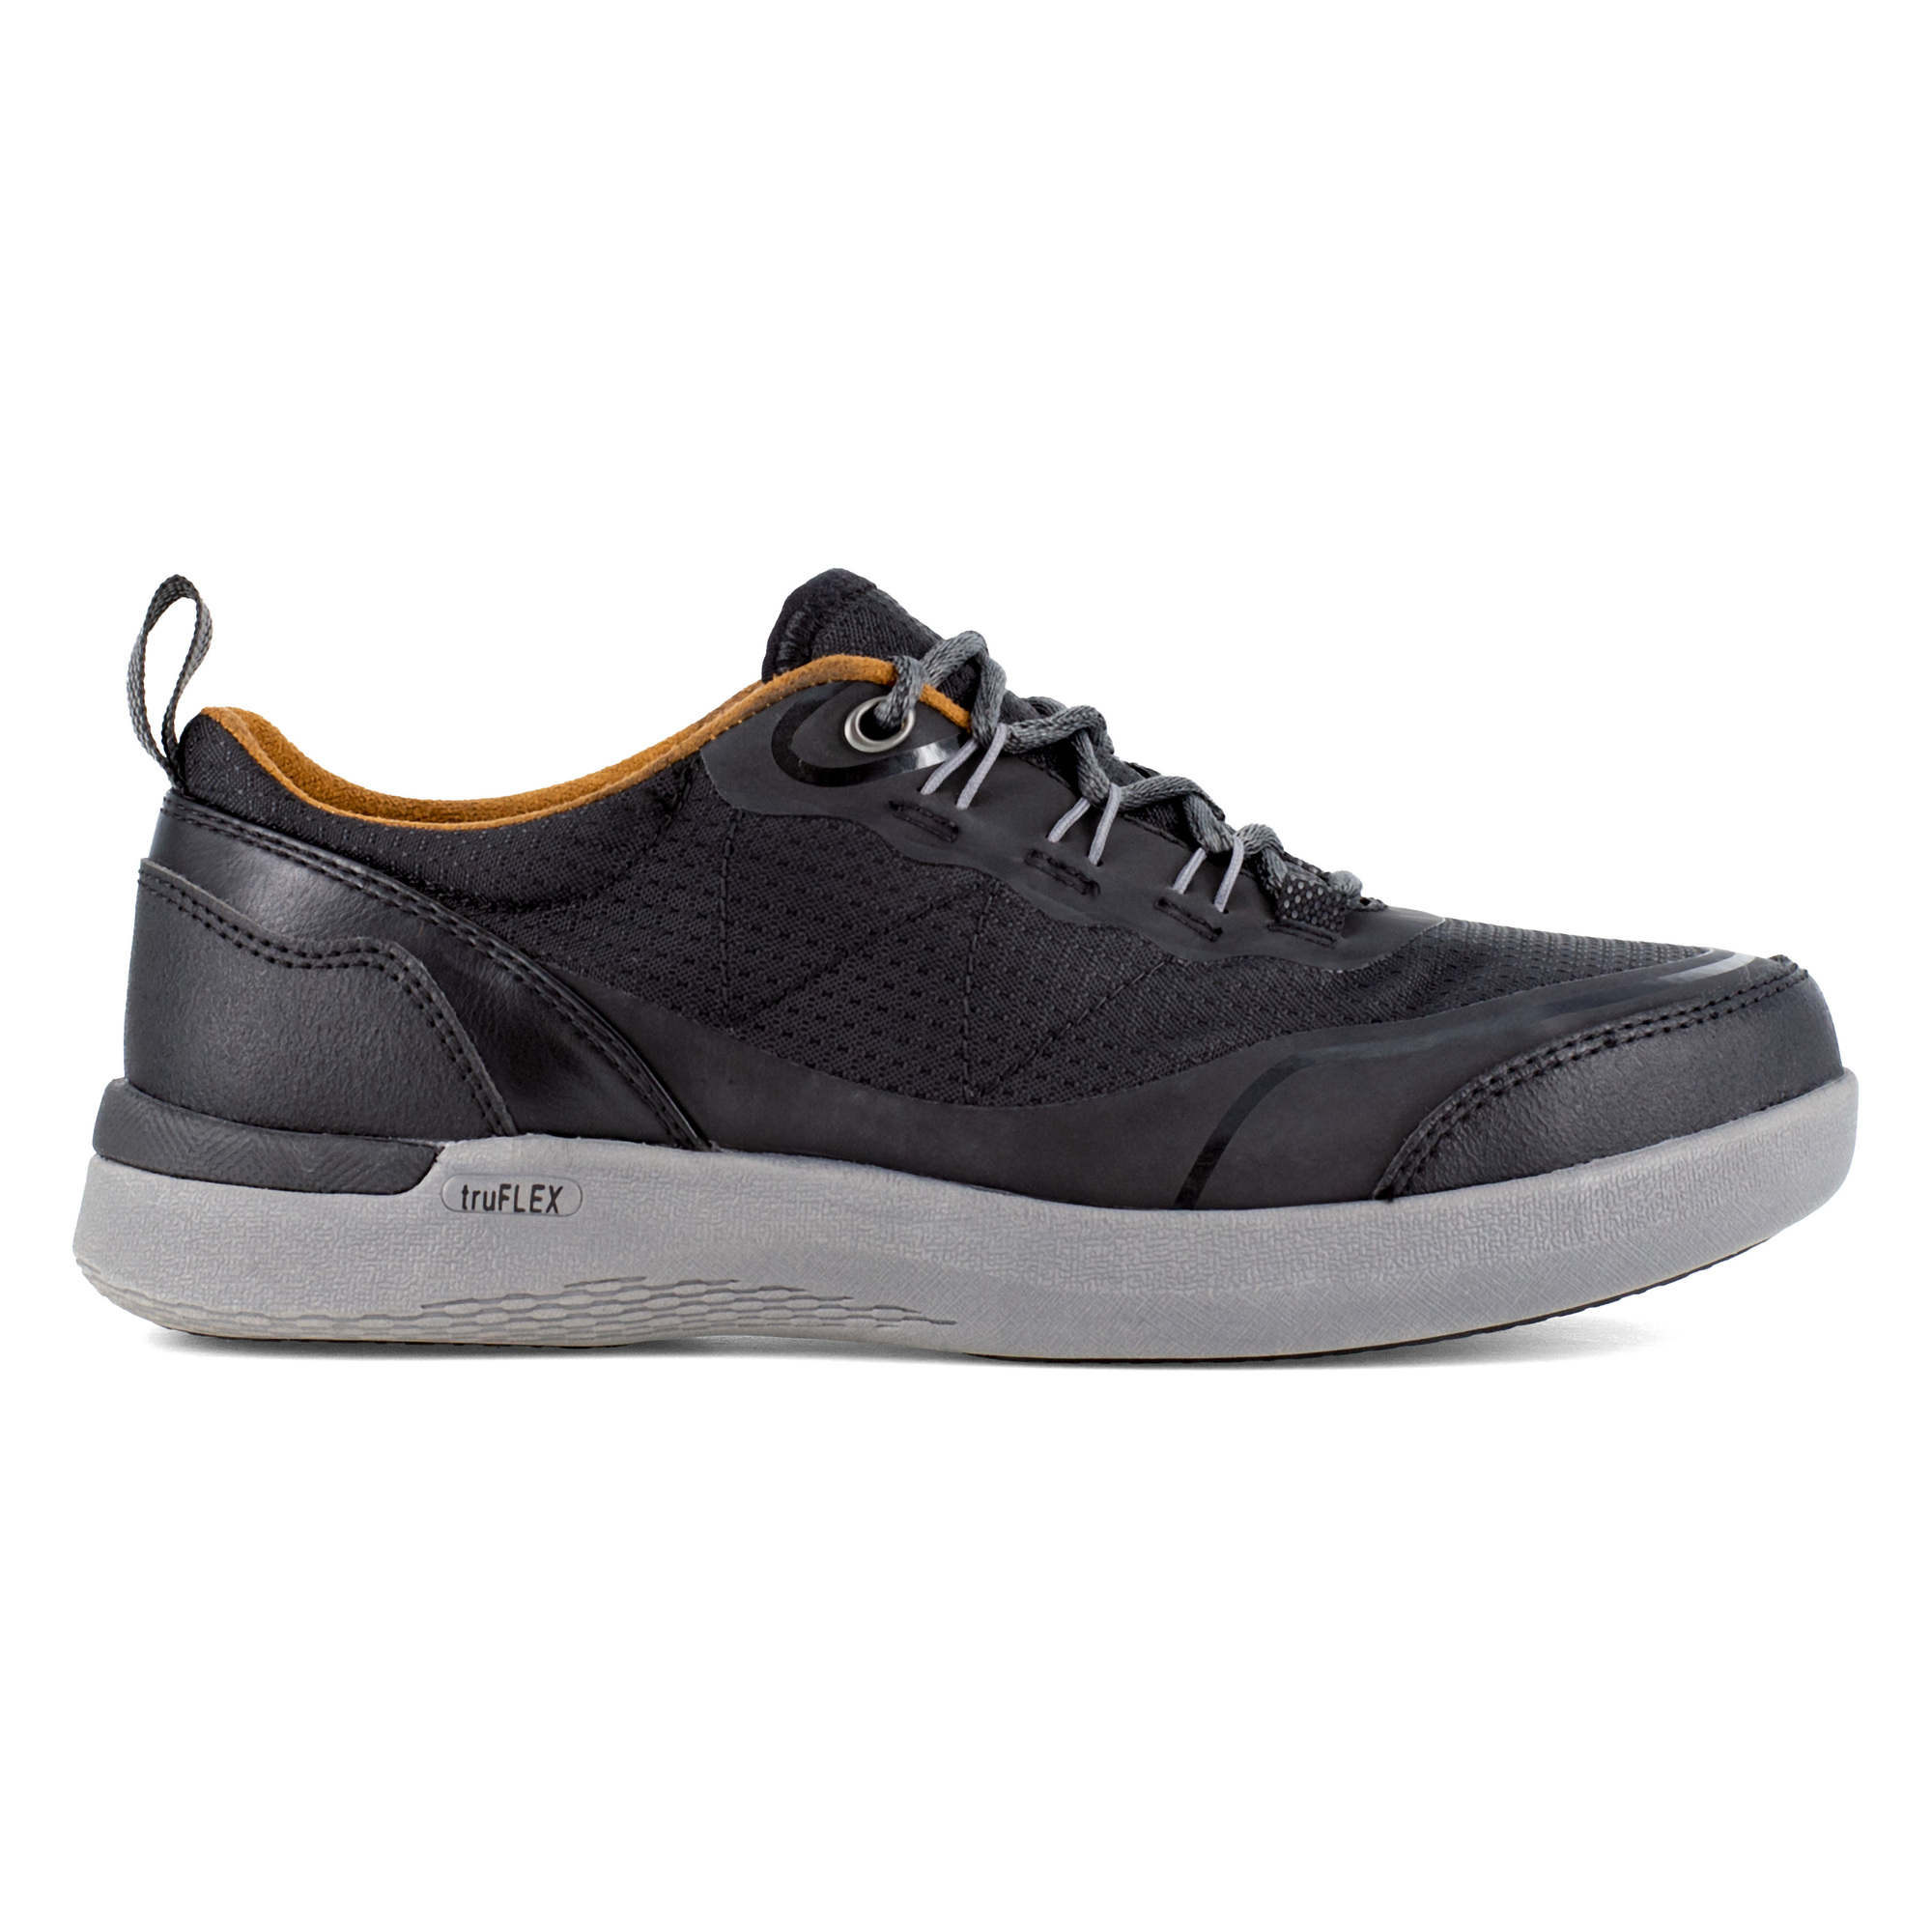 Rockport Works, Work Sneaker, Size 6, Width Medium, Color Black, Model RK687